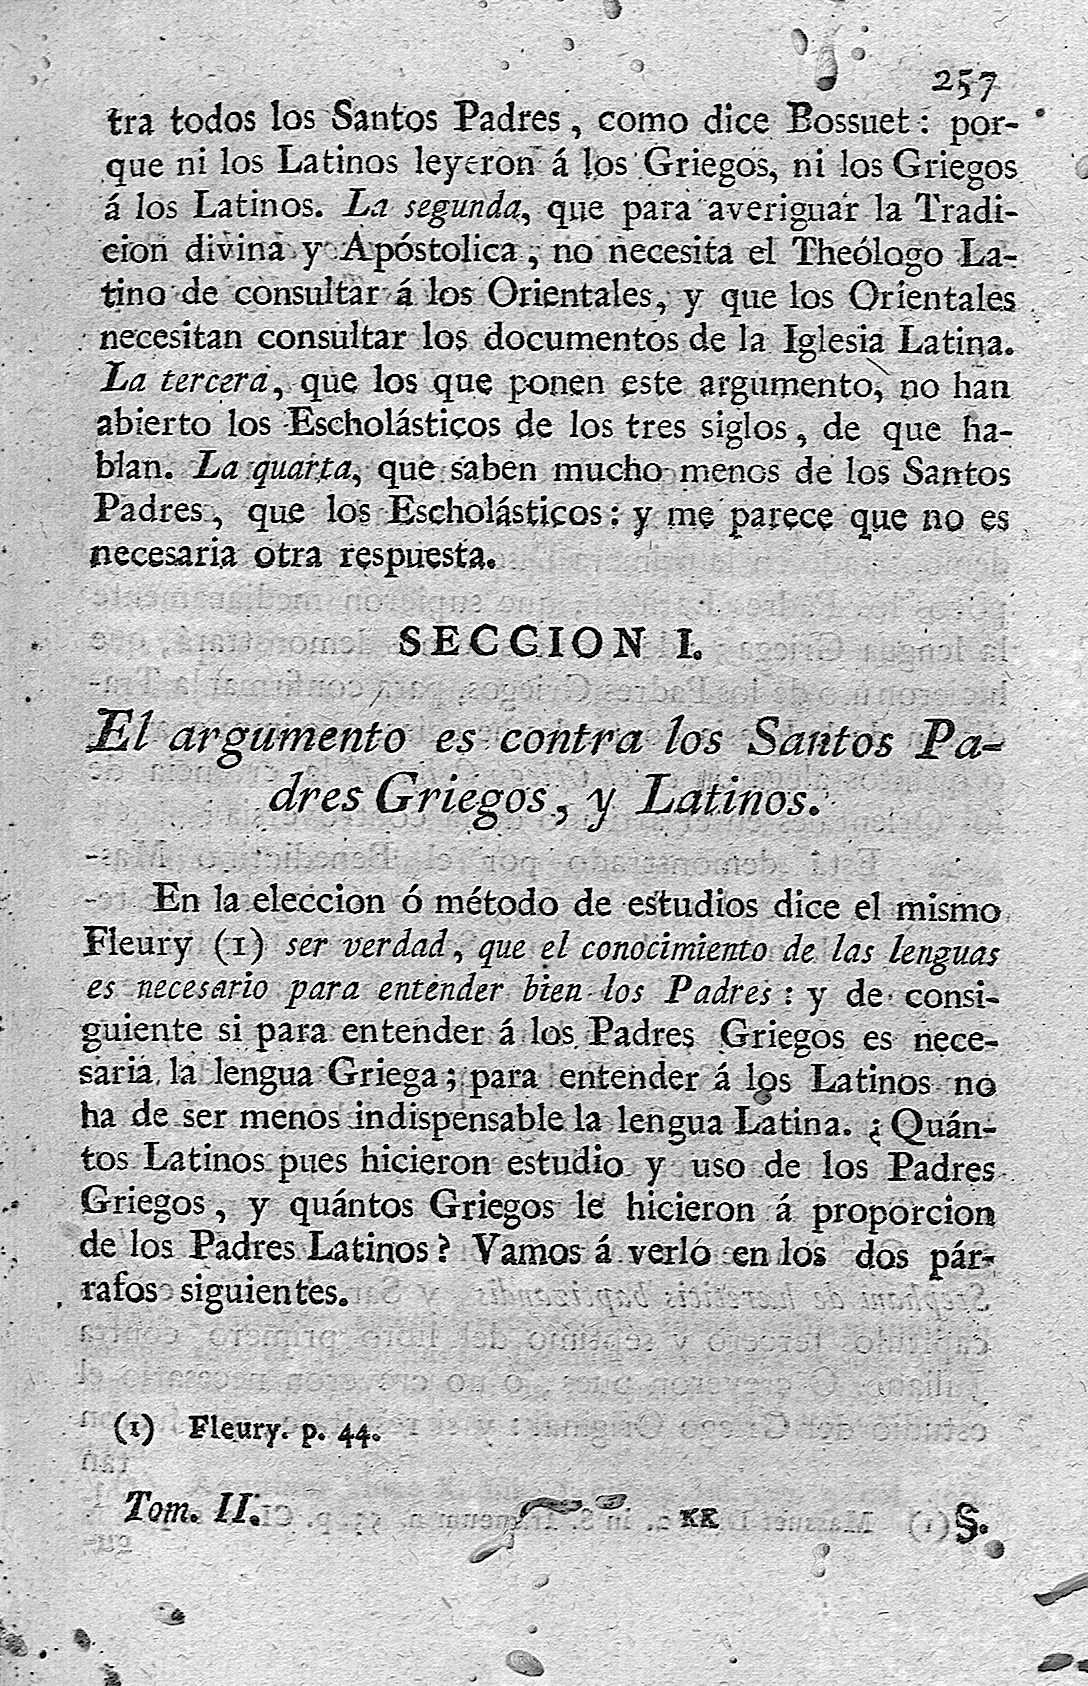 [Seccion I. El argumento es contra los Santos Padres Griegos, y Latinos] 257